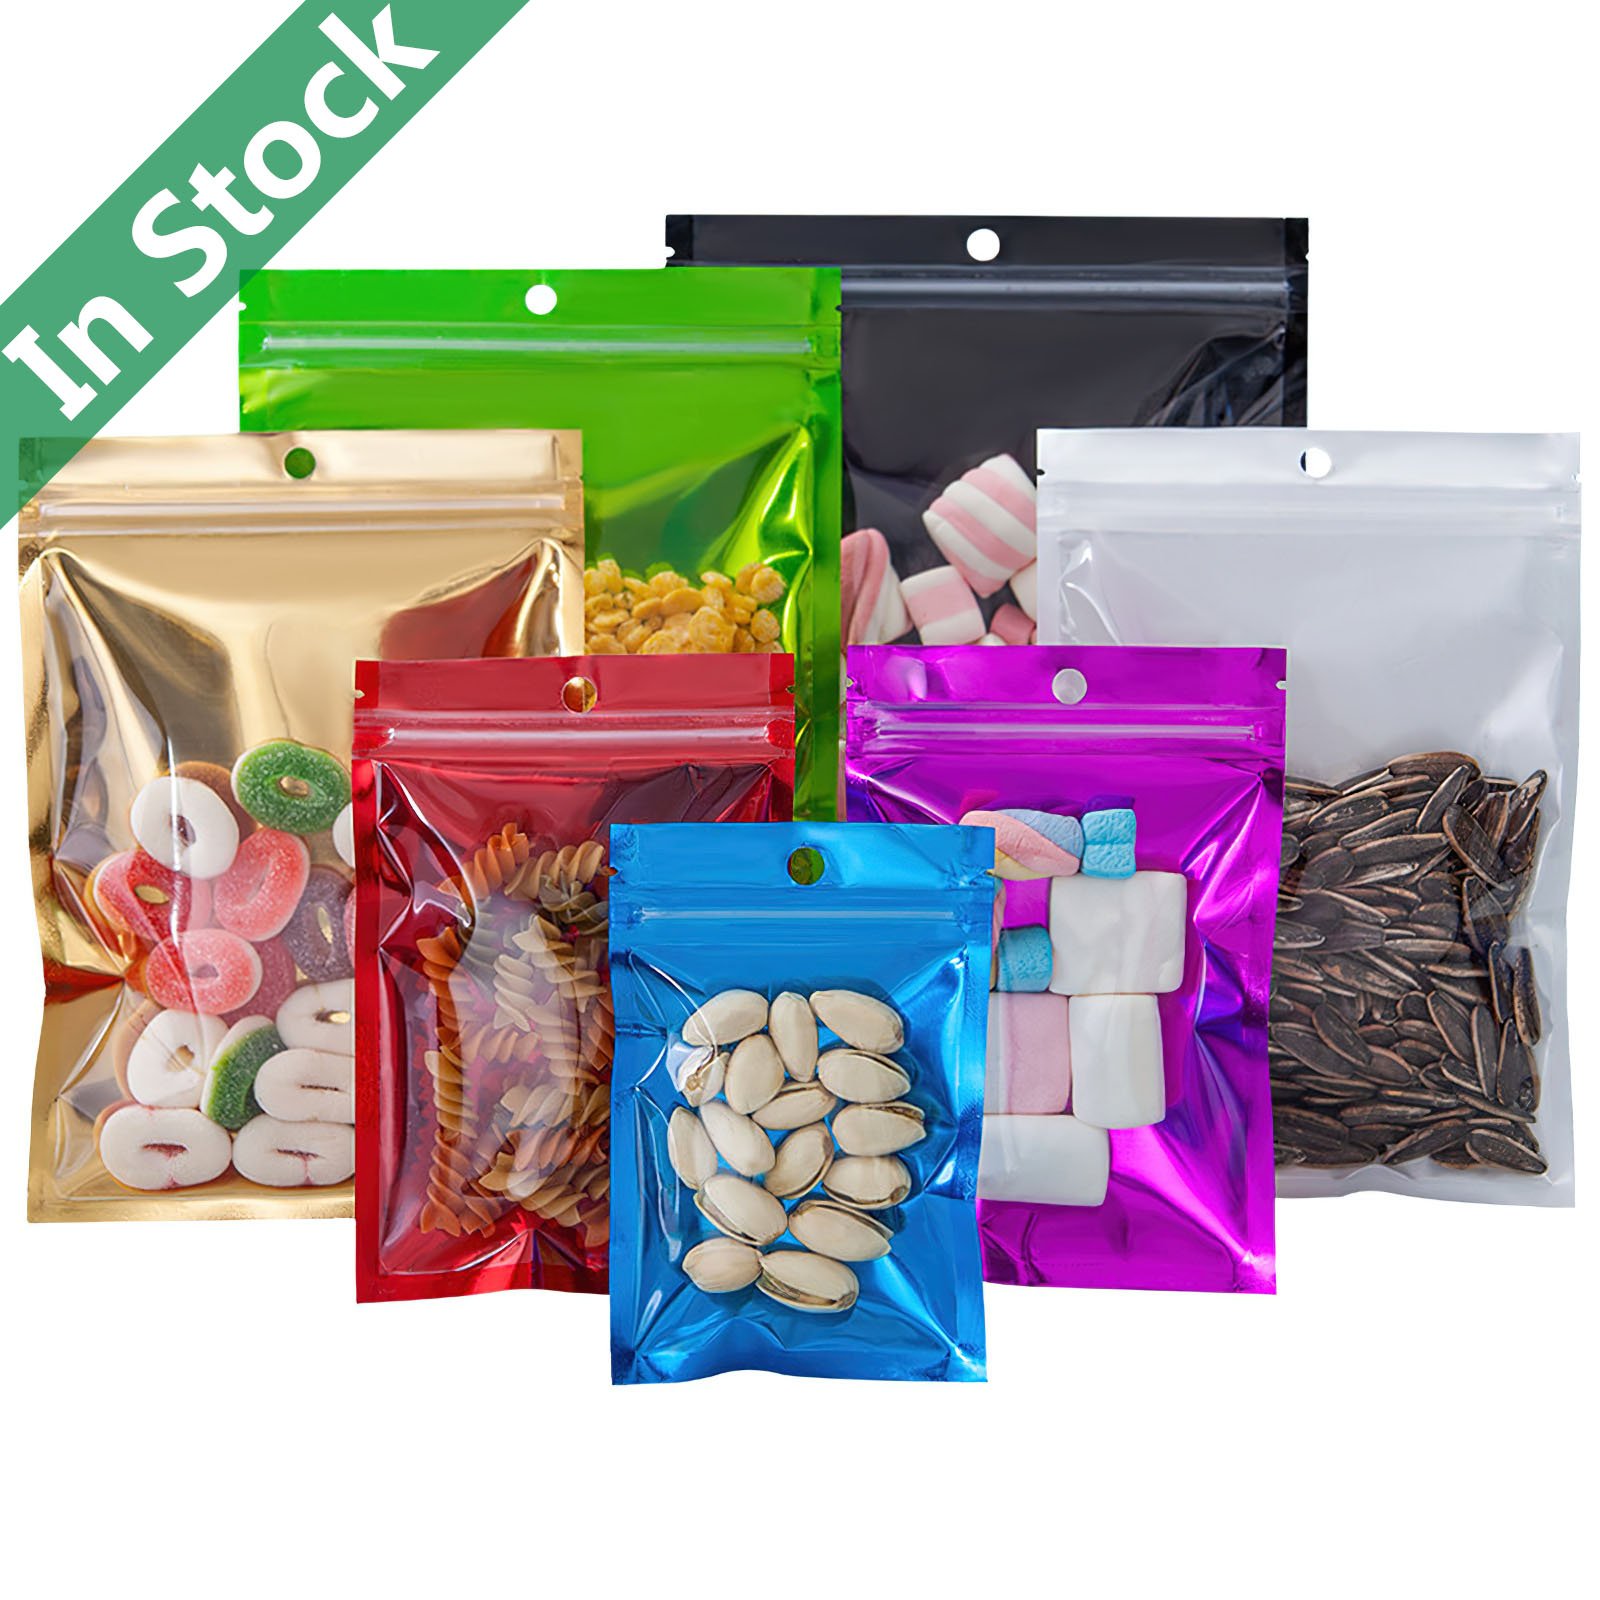 270 Zip lock plastic bags ideas  bags, jewelry packaging, plastic bag